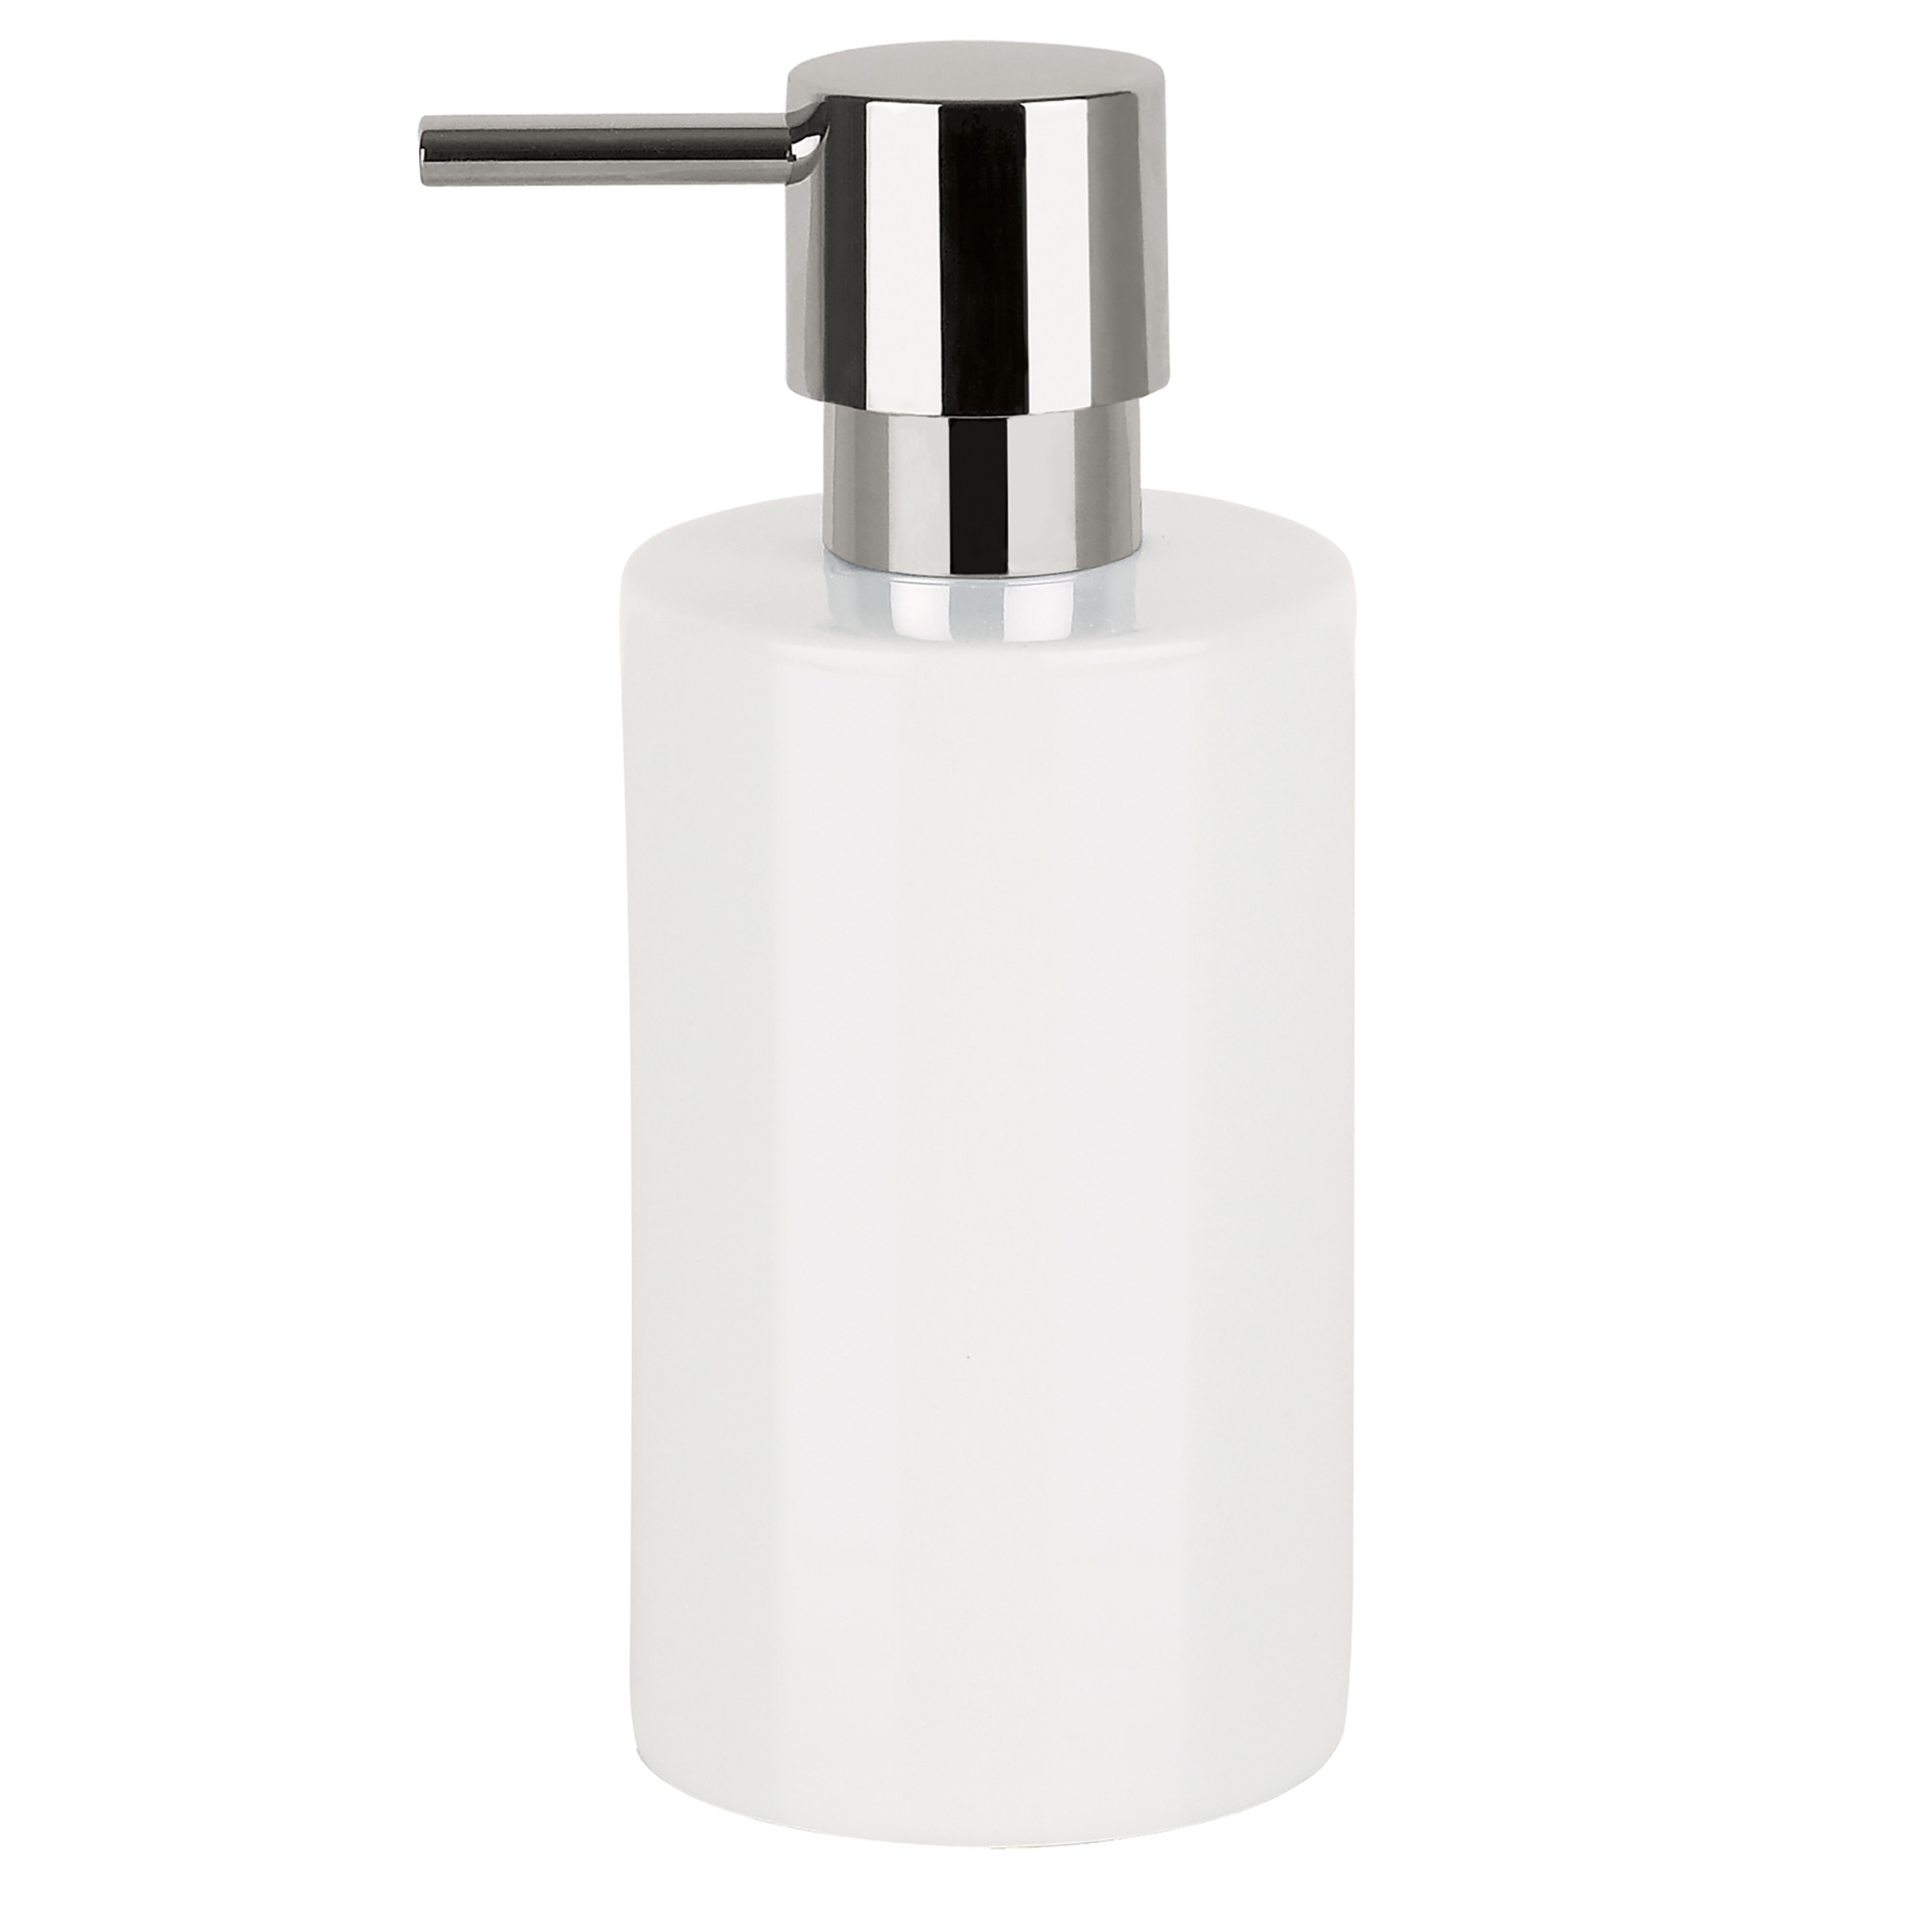 Luxe zeeppompje-dispenser Sienna glans ivoor wit porselein 16 x 7 cm 300 ml